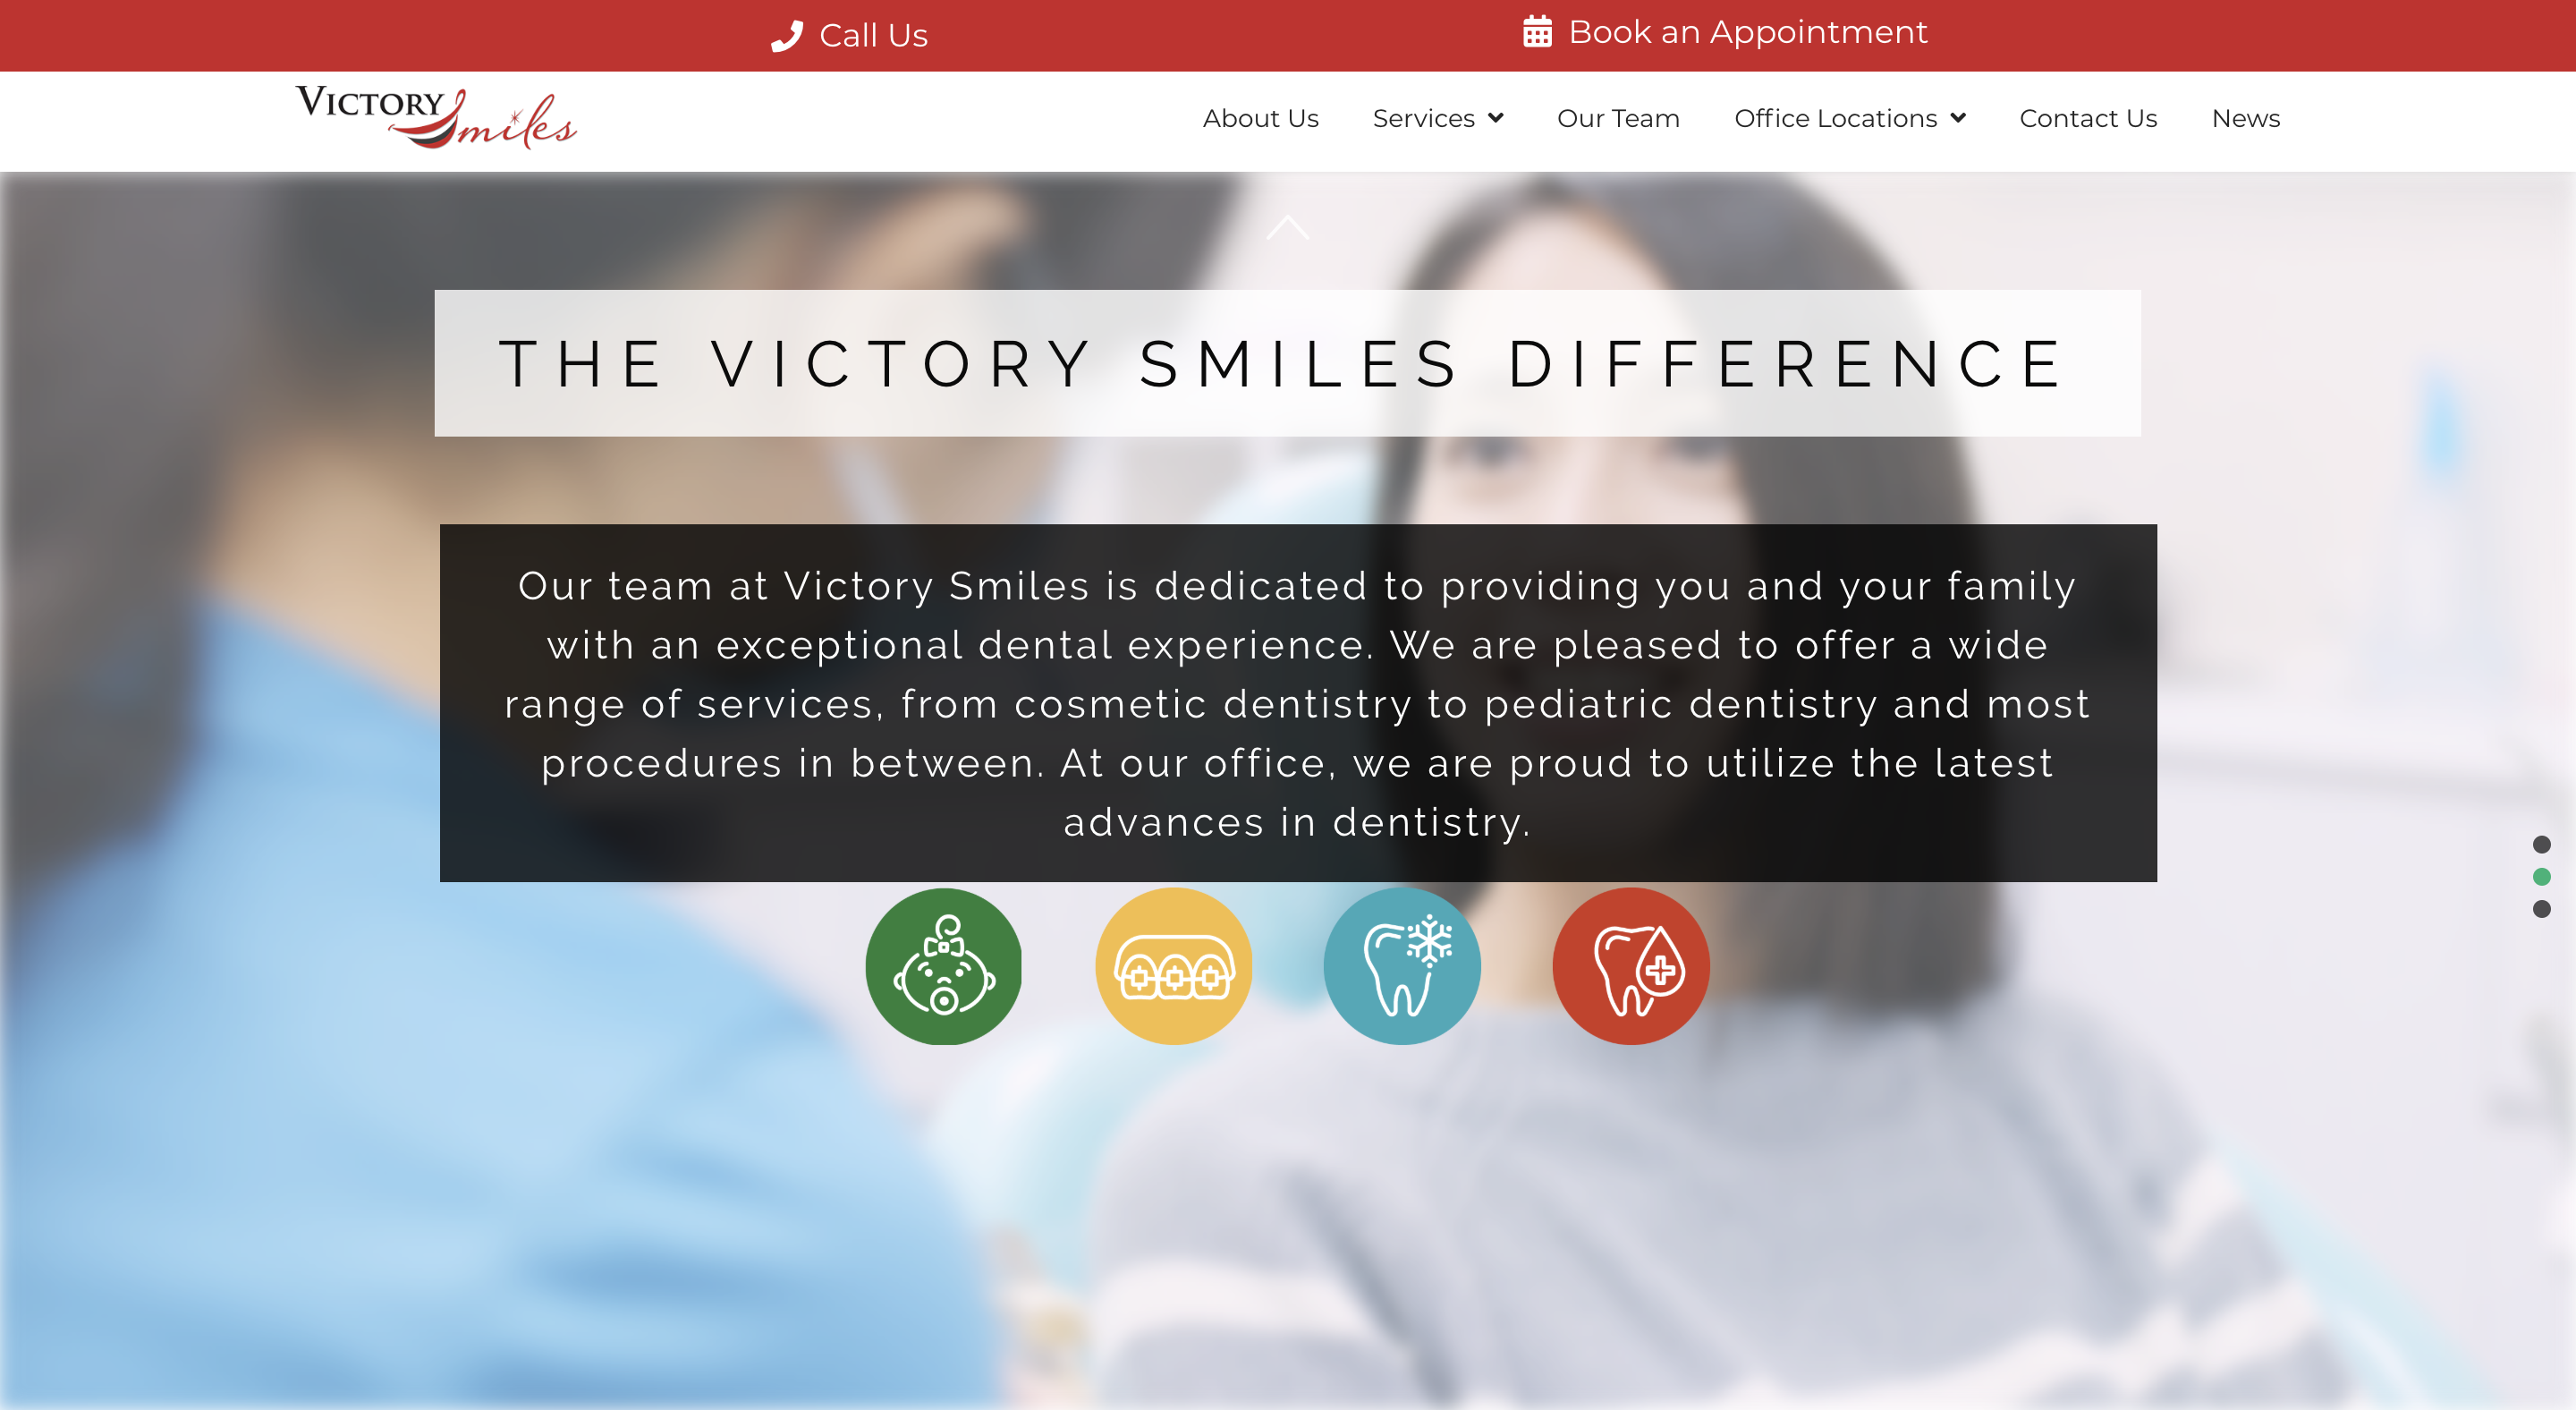 Victory Smiles dentist homepage slide 2